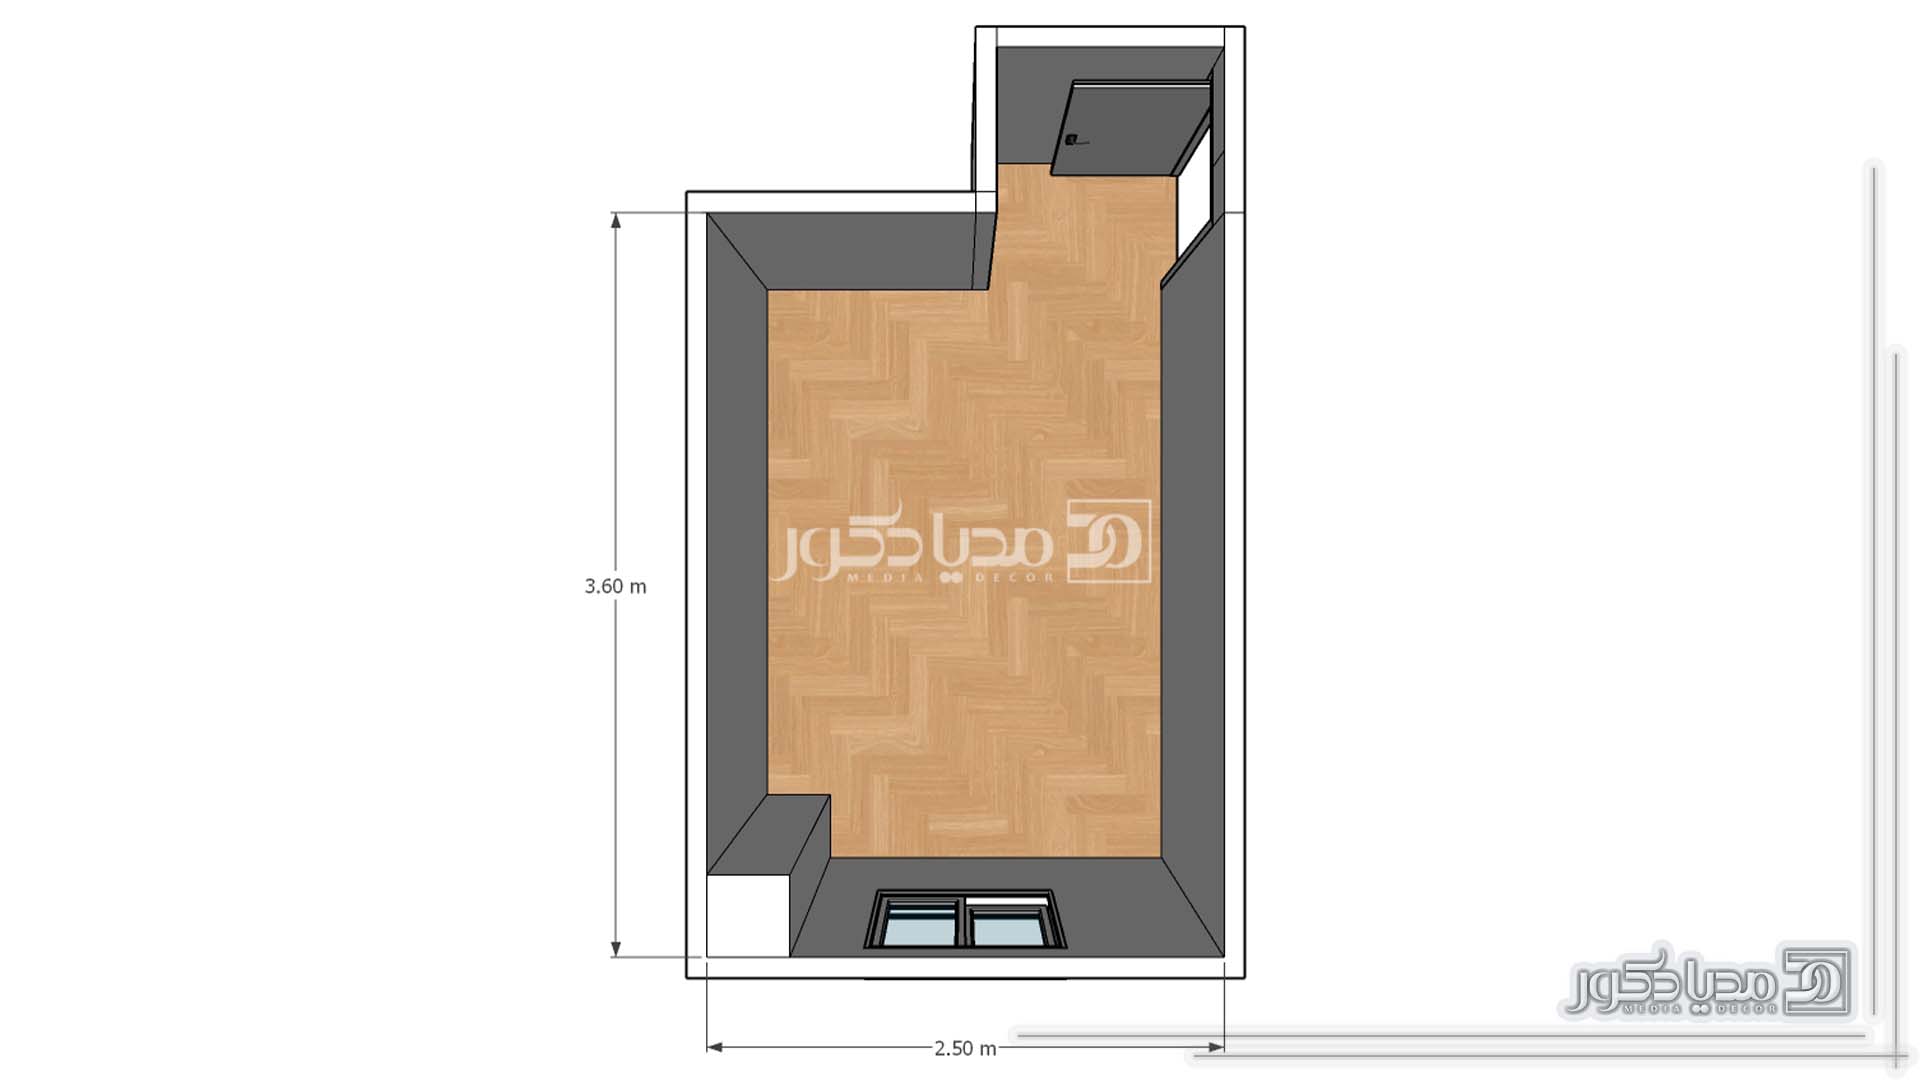 پلان اتاق خواب 9 متری با ابعاد 360 در 250 سانتیمتر